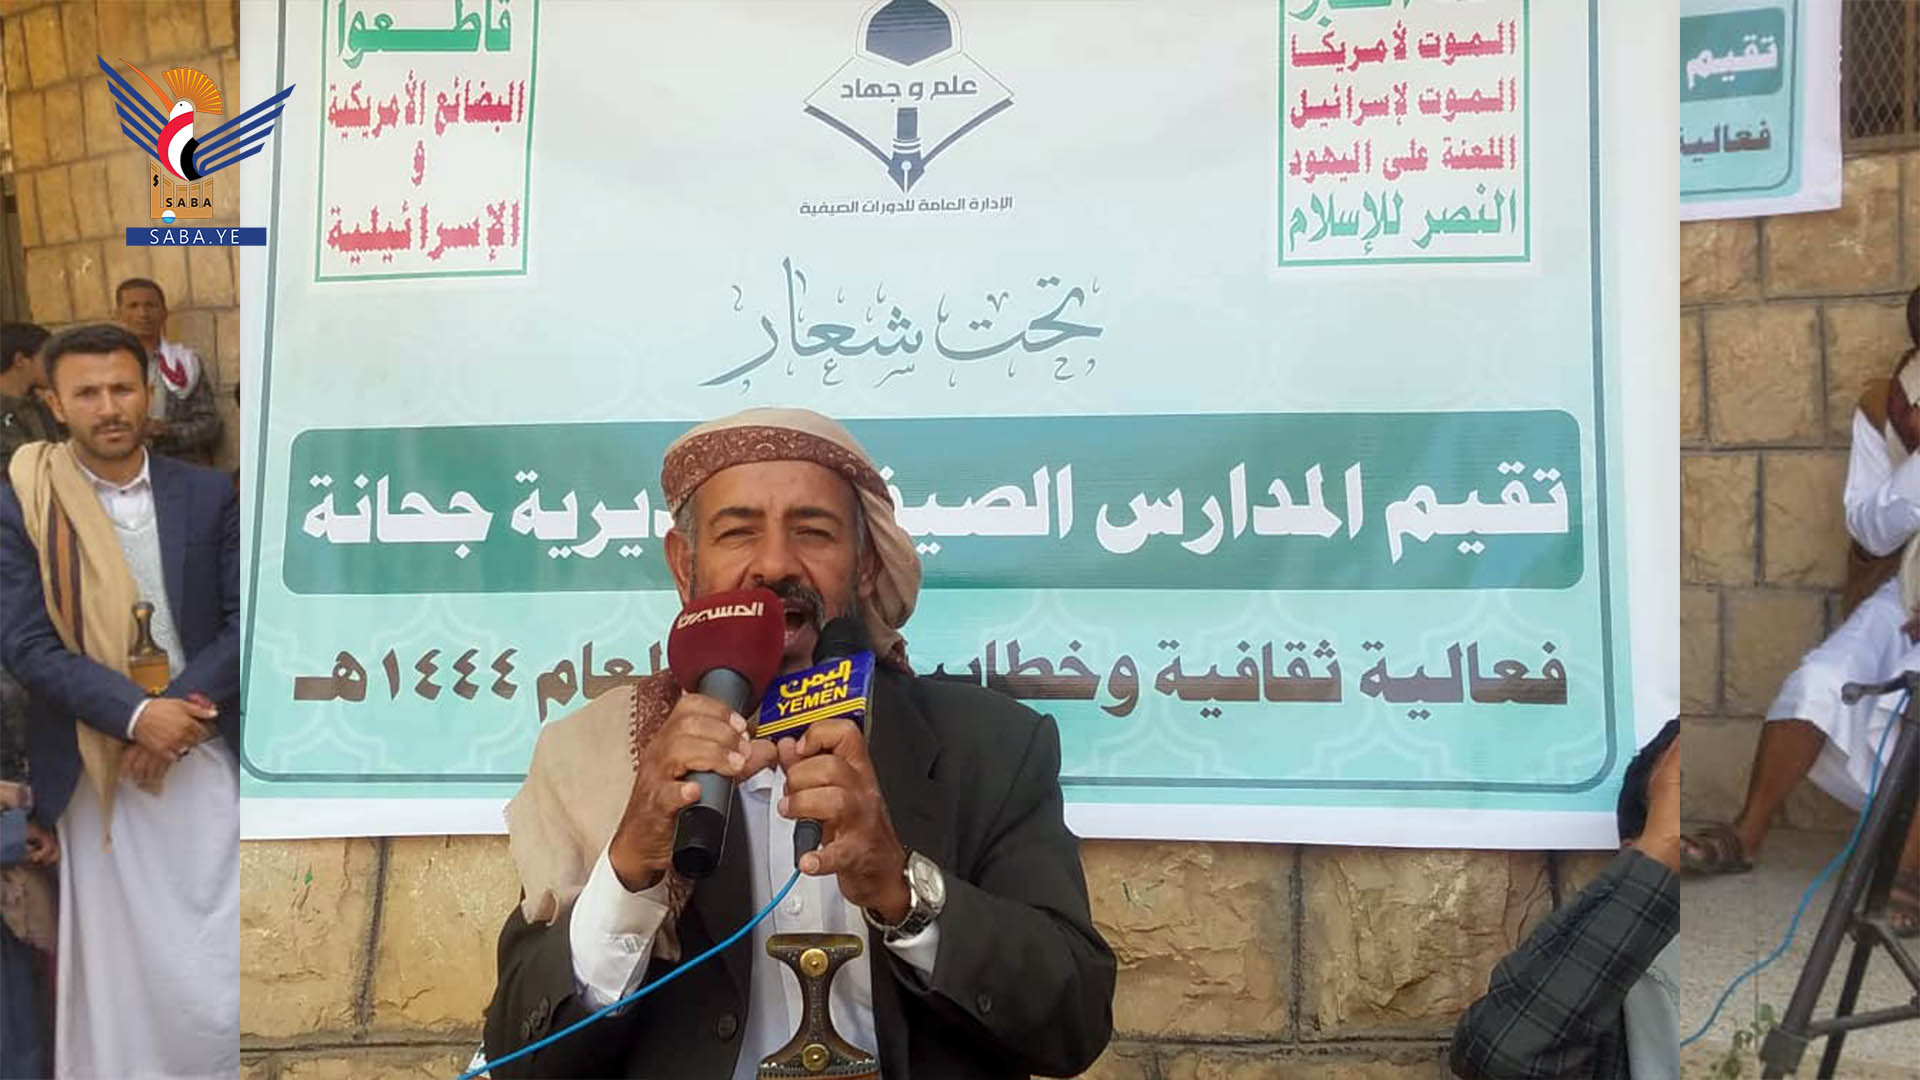 فعاليات وزيارات تفقدية للدورات الصيفية بعدد من مديريات محافظة صنعاء